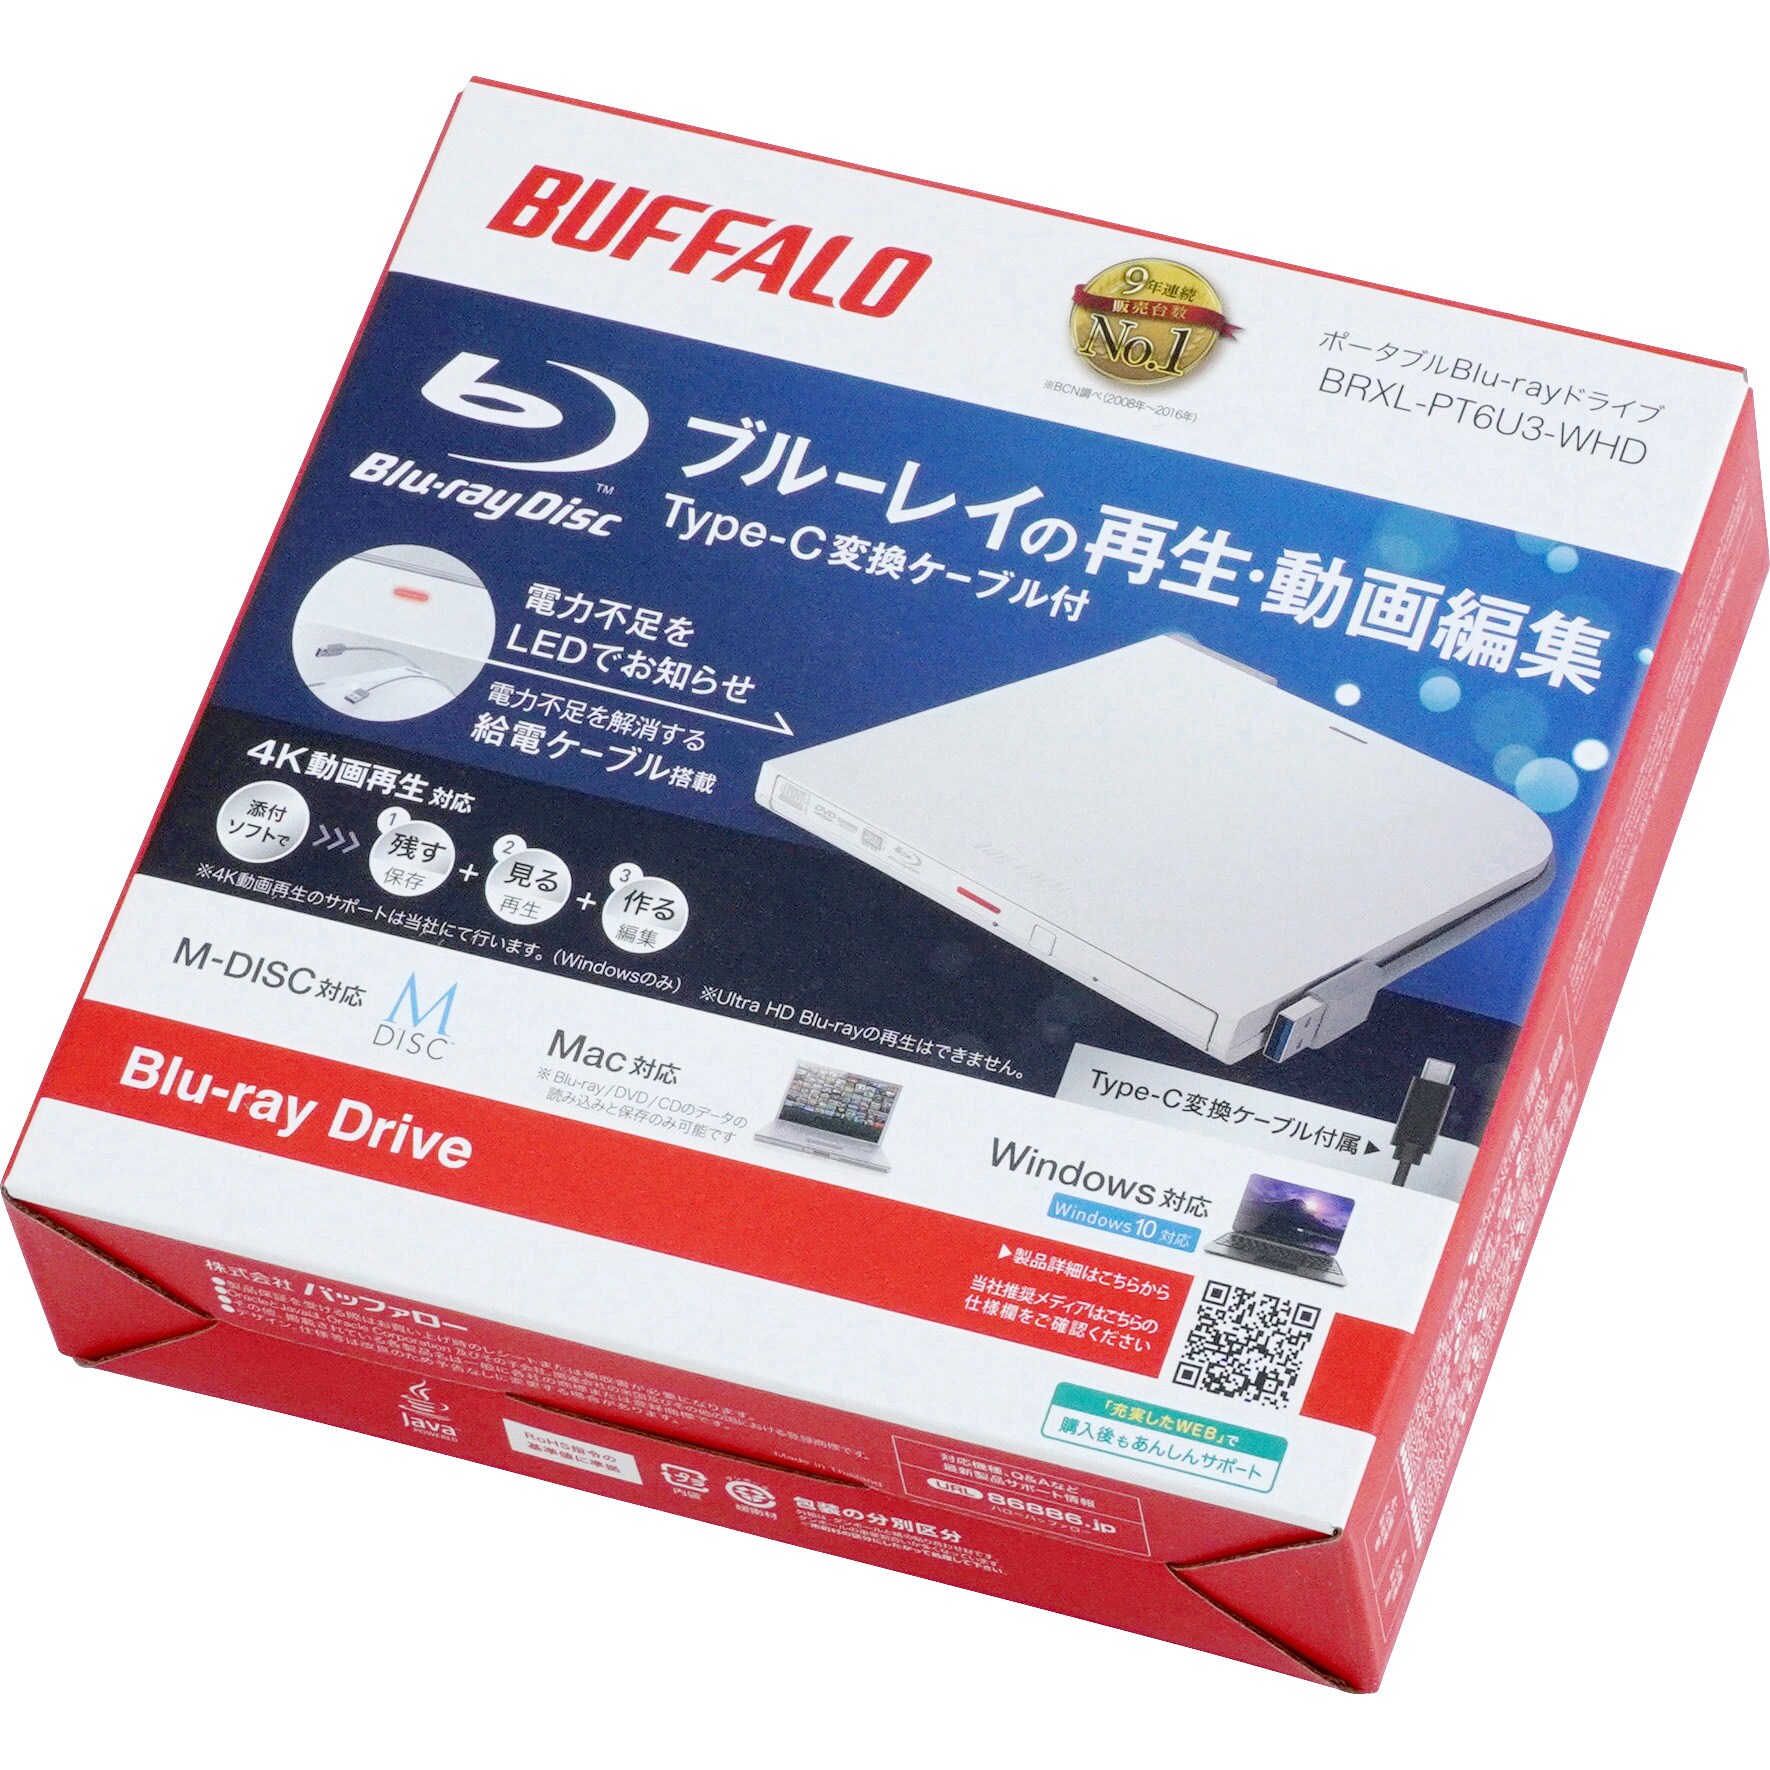 BUFFALO ポータブルBlu-rayドライブ ホワイト BRXL-PT6U3PCタブレット